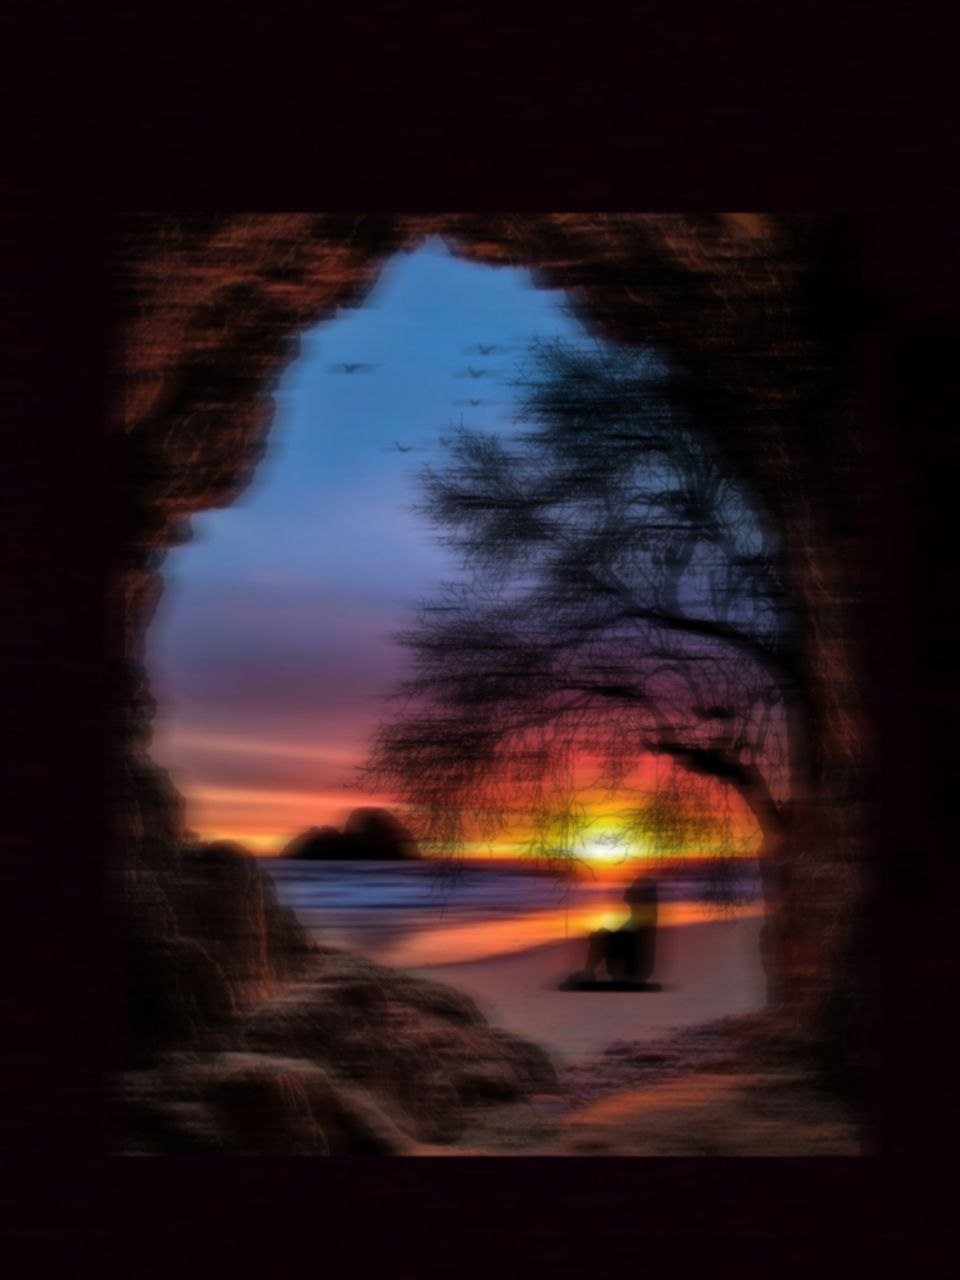 a sunset through a window